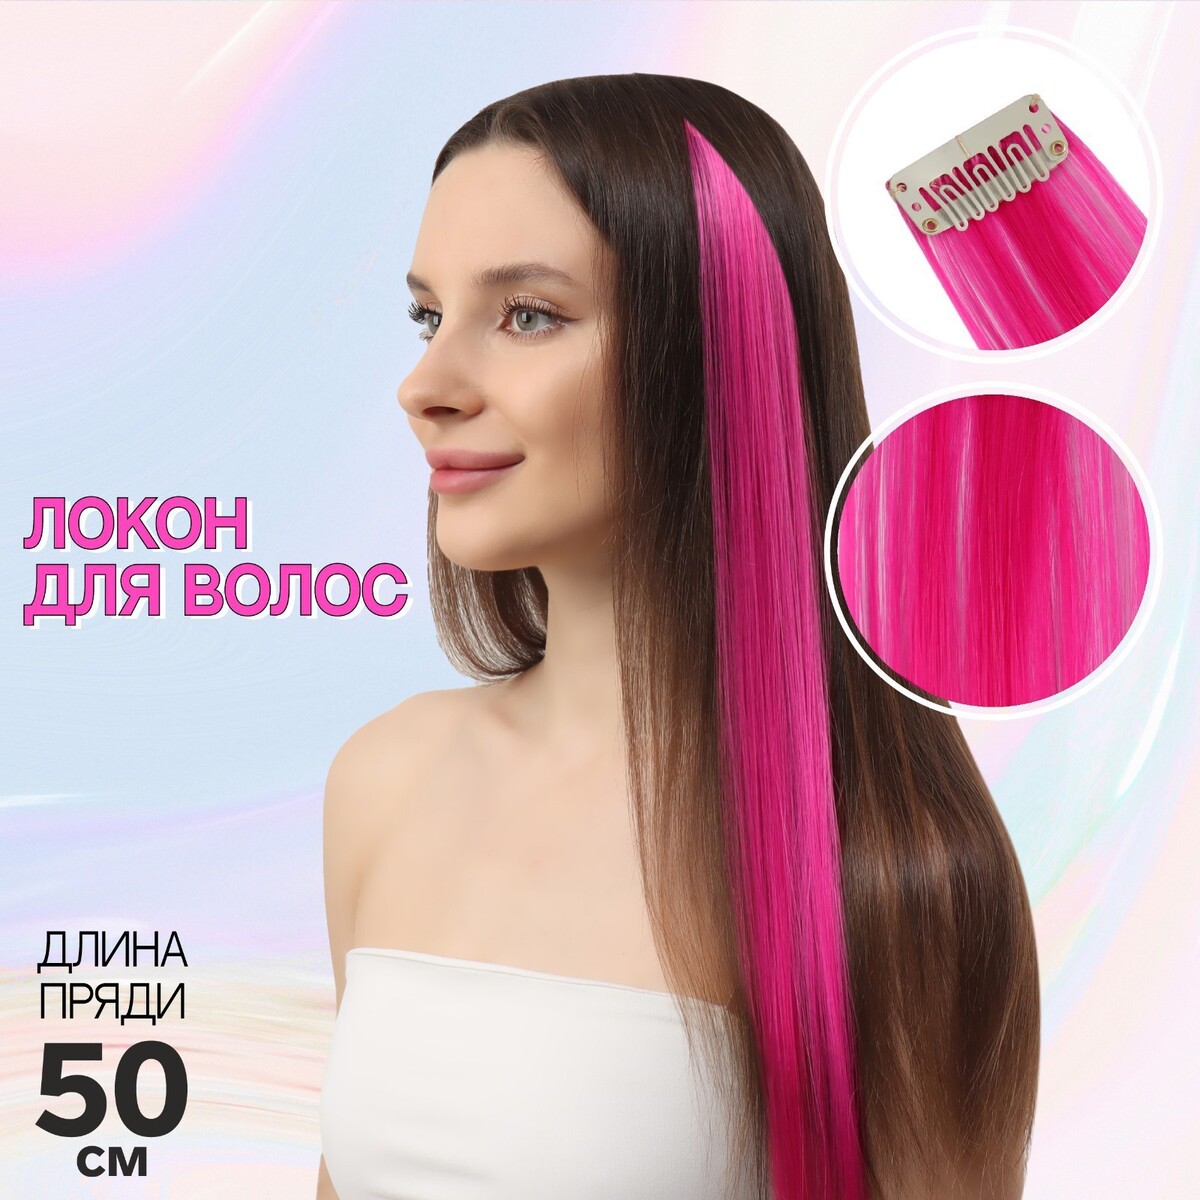 Локон накладной, прямой волос, на заколке, 50 см, 5 гр, цвет розовый локон накладной прямой волос на заколке 50 см 5 гр каштановый